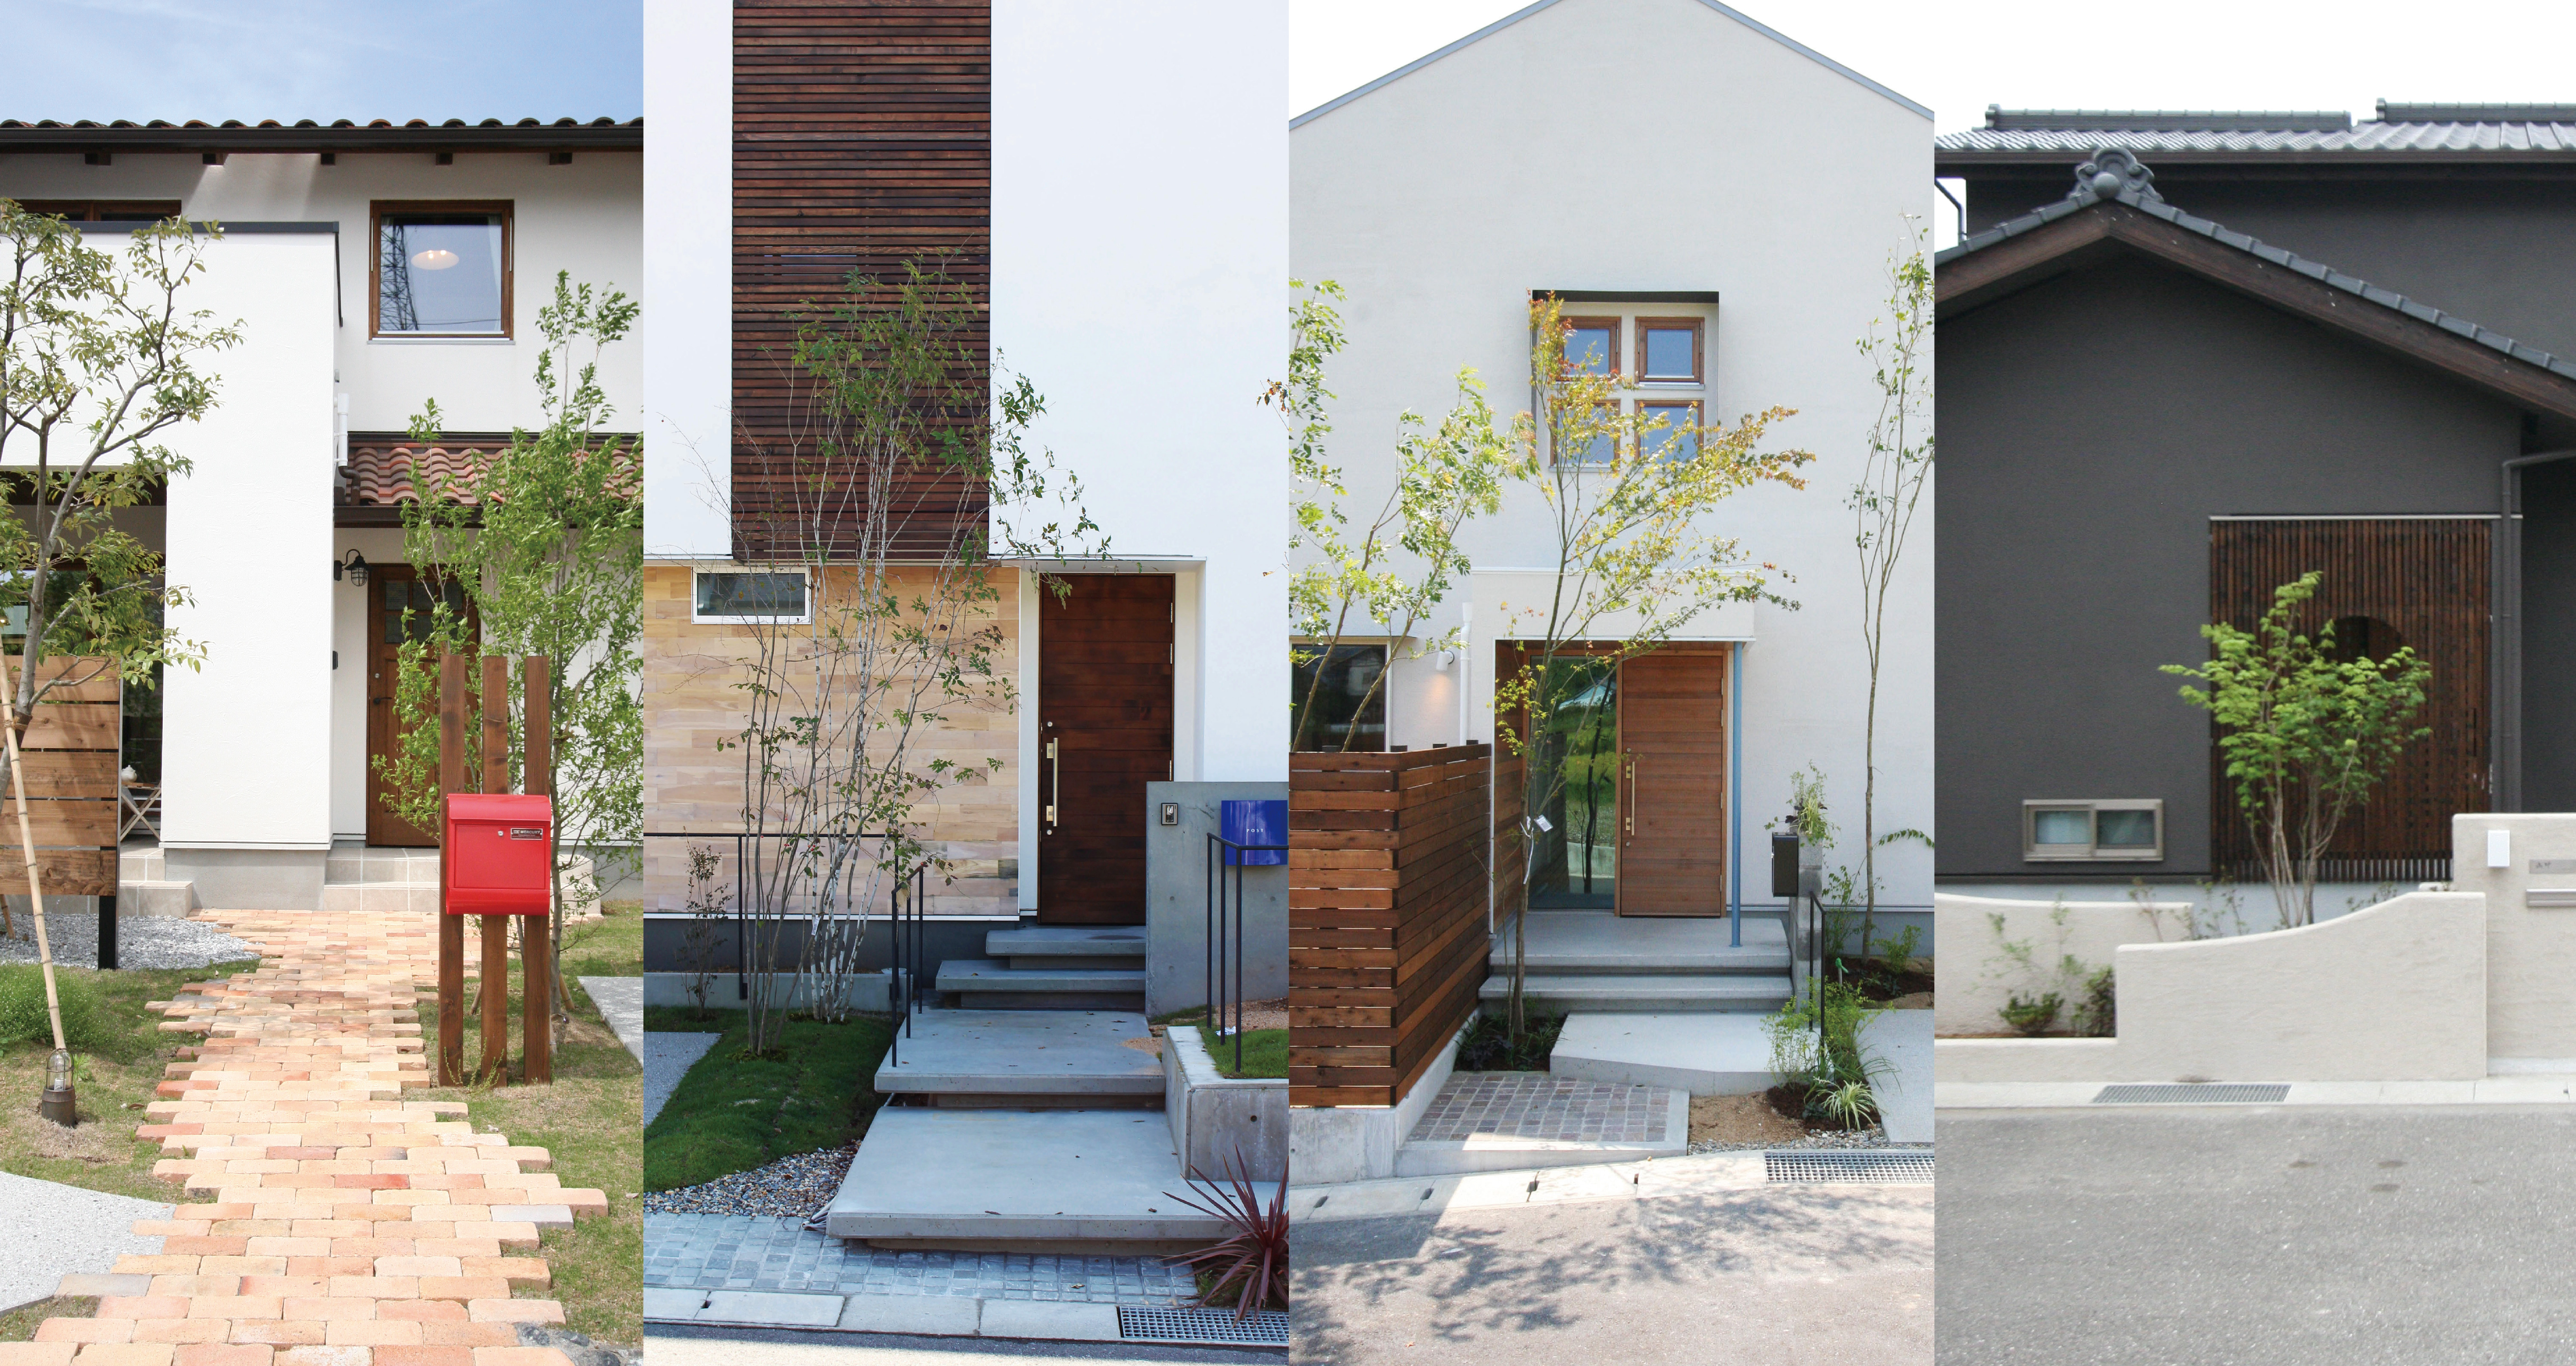 タイセイホームが デザインの良い家づくり を大切にしている理由 高知県で新築を考えるご家族にデザインで選ばれている理由 高知の新築 注文住宅 自然素材の家